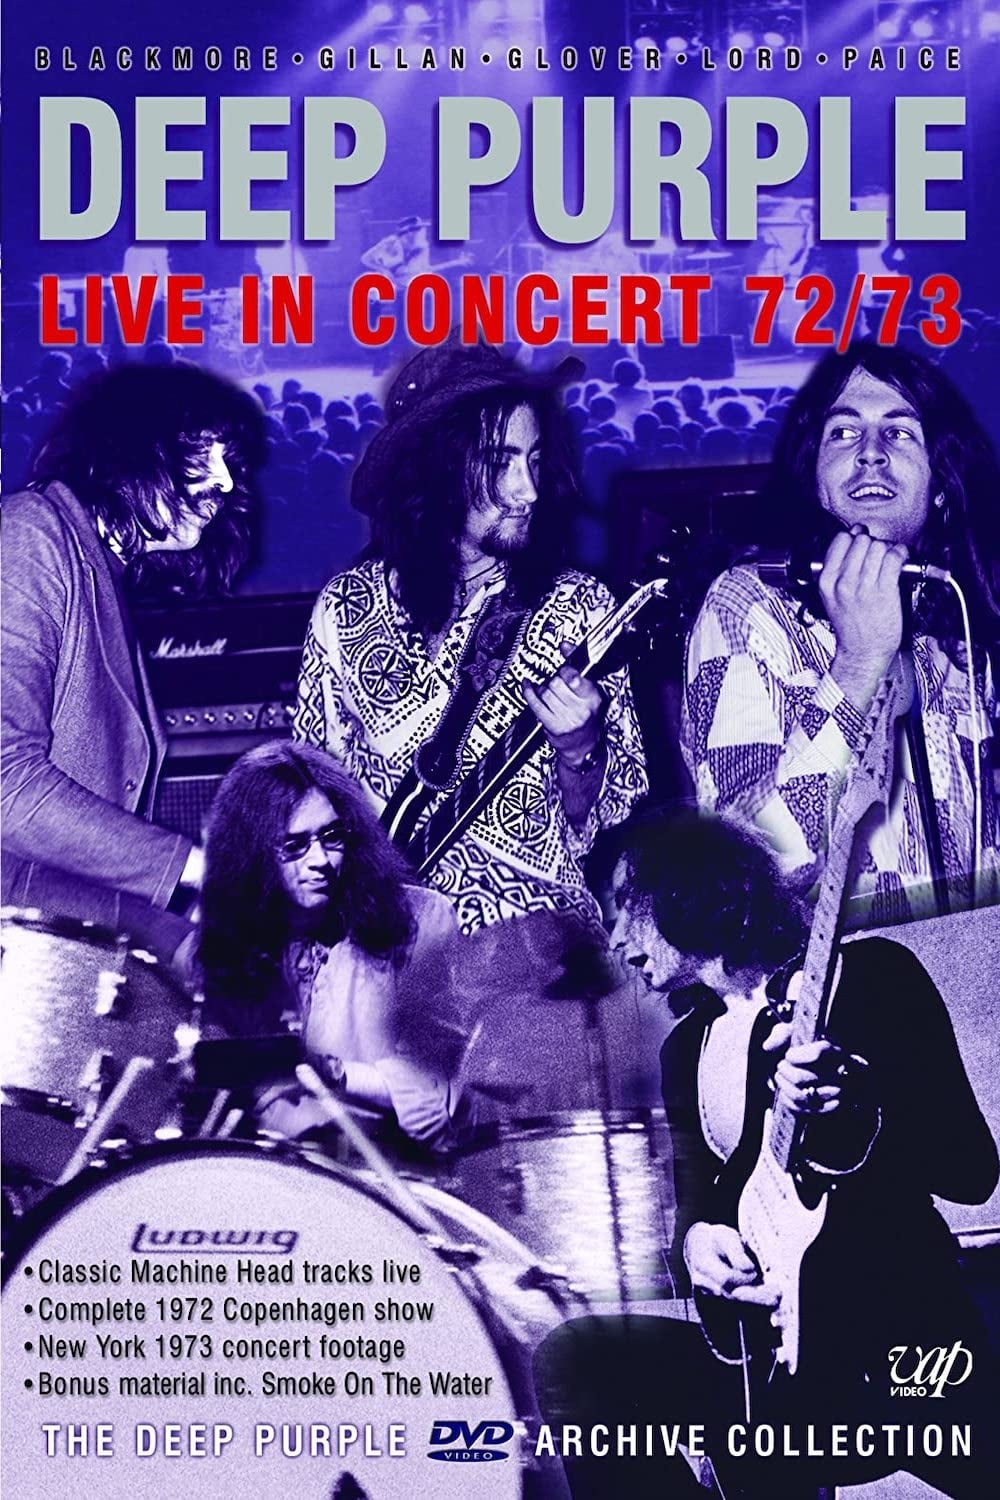 Deep Purple: Live in concert 72/73